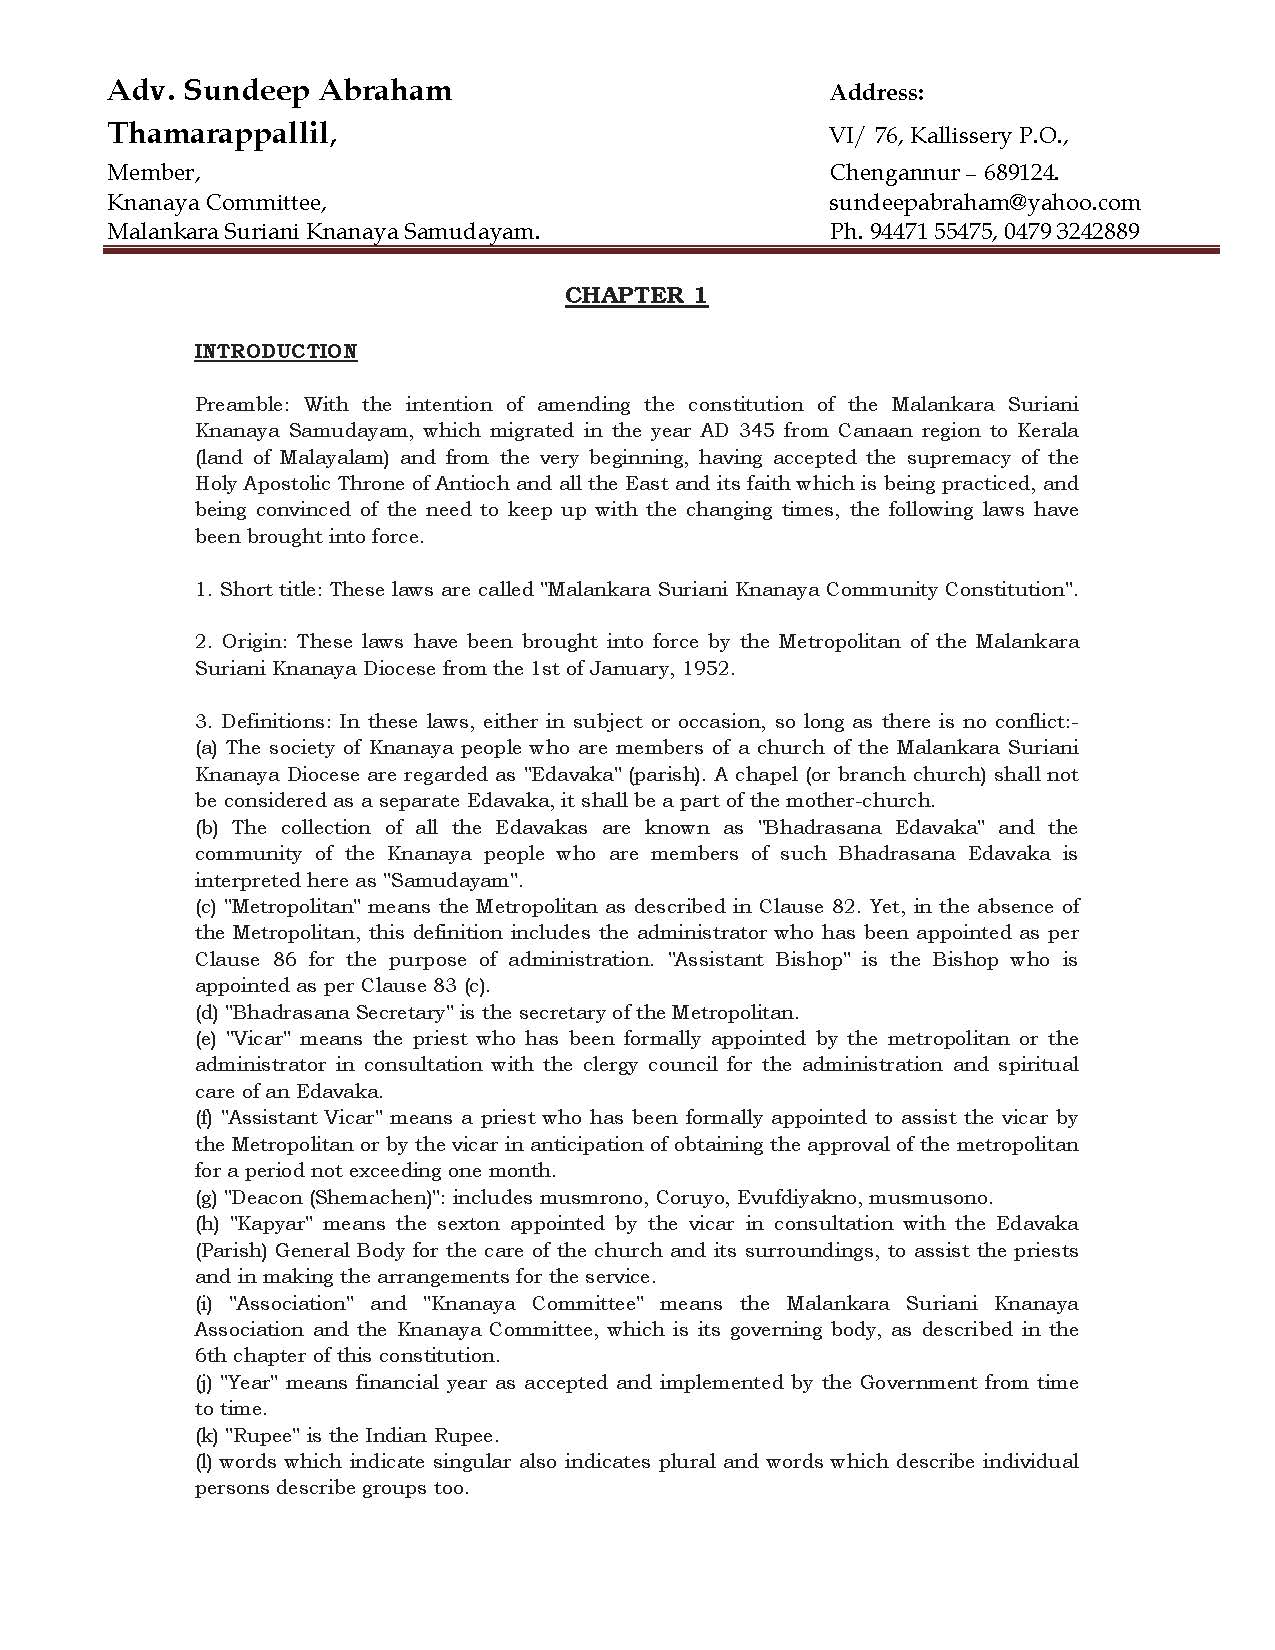 Malankara Suriyani Constitution in English